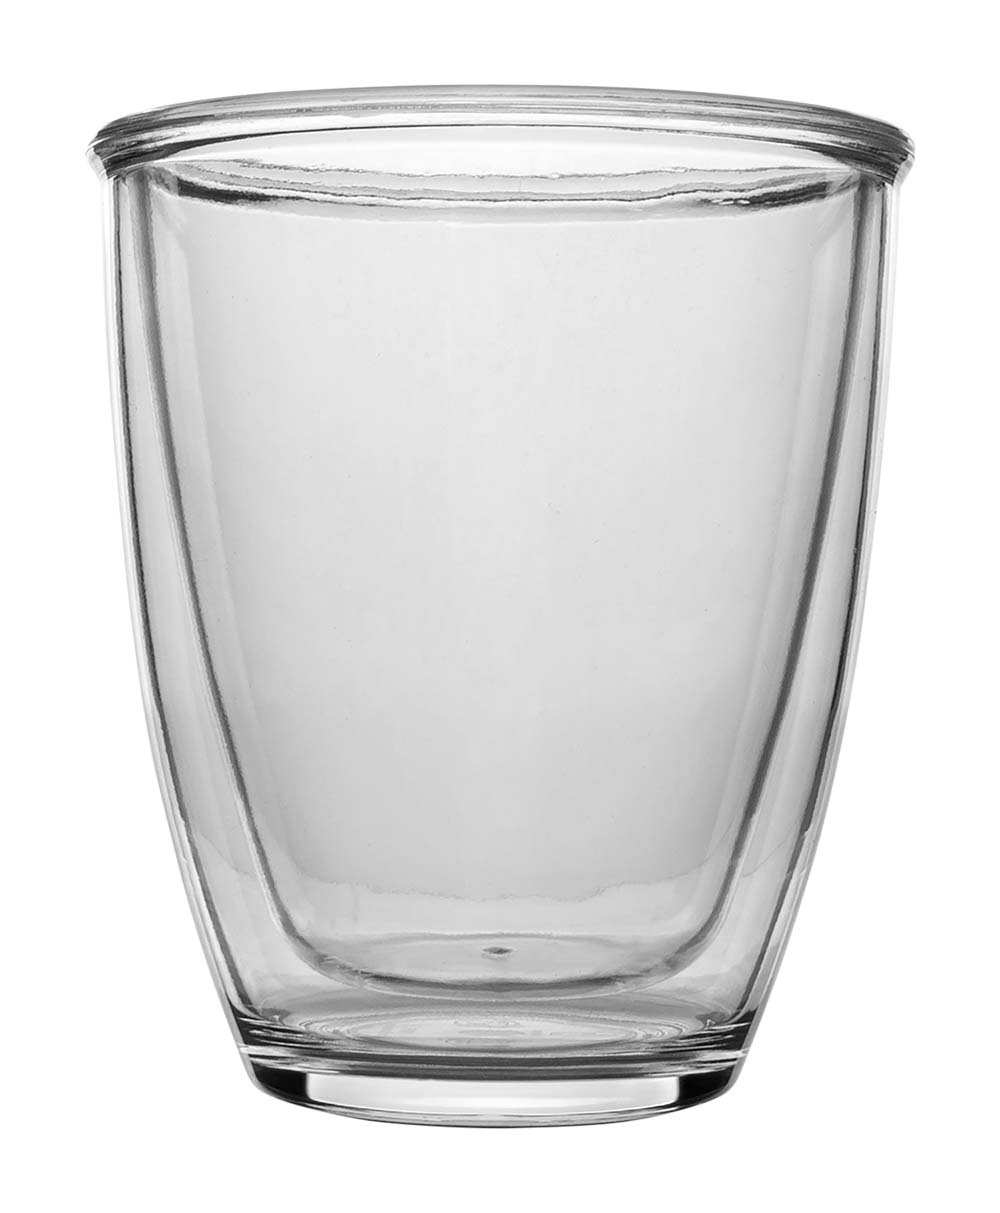 6101425 Zeer handig dubbelwandig glas. Het dubbelwandige glazes heeft een aantal voordelen. Zo zorgt de lucht tussen de 2 wanden voor een isolerend effect. Hierdoor blijft het drinken in het glas langer warm. Daarnaast zorgt de extra wand ervoor dat het glas met warm drinken makkelijk vastgehouden kan worden. De buitenste wand wordt namelijk niet zo warm. De glazen zijn gemaakt van polycarbonaat, hierdoor zijn ze zeer sterk en vrijwel onbreekbaar. Dit glas wordt per stuk verkocht. Ook verkrijgbaar in een set van 2 stuks.